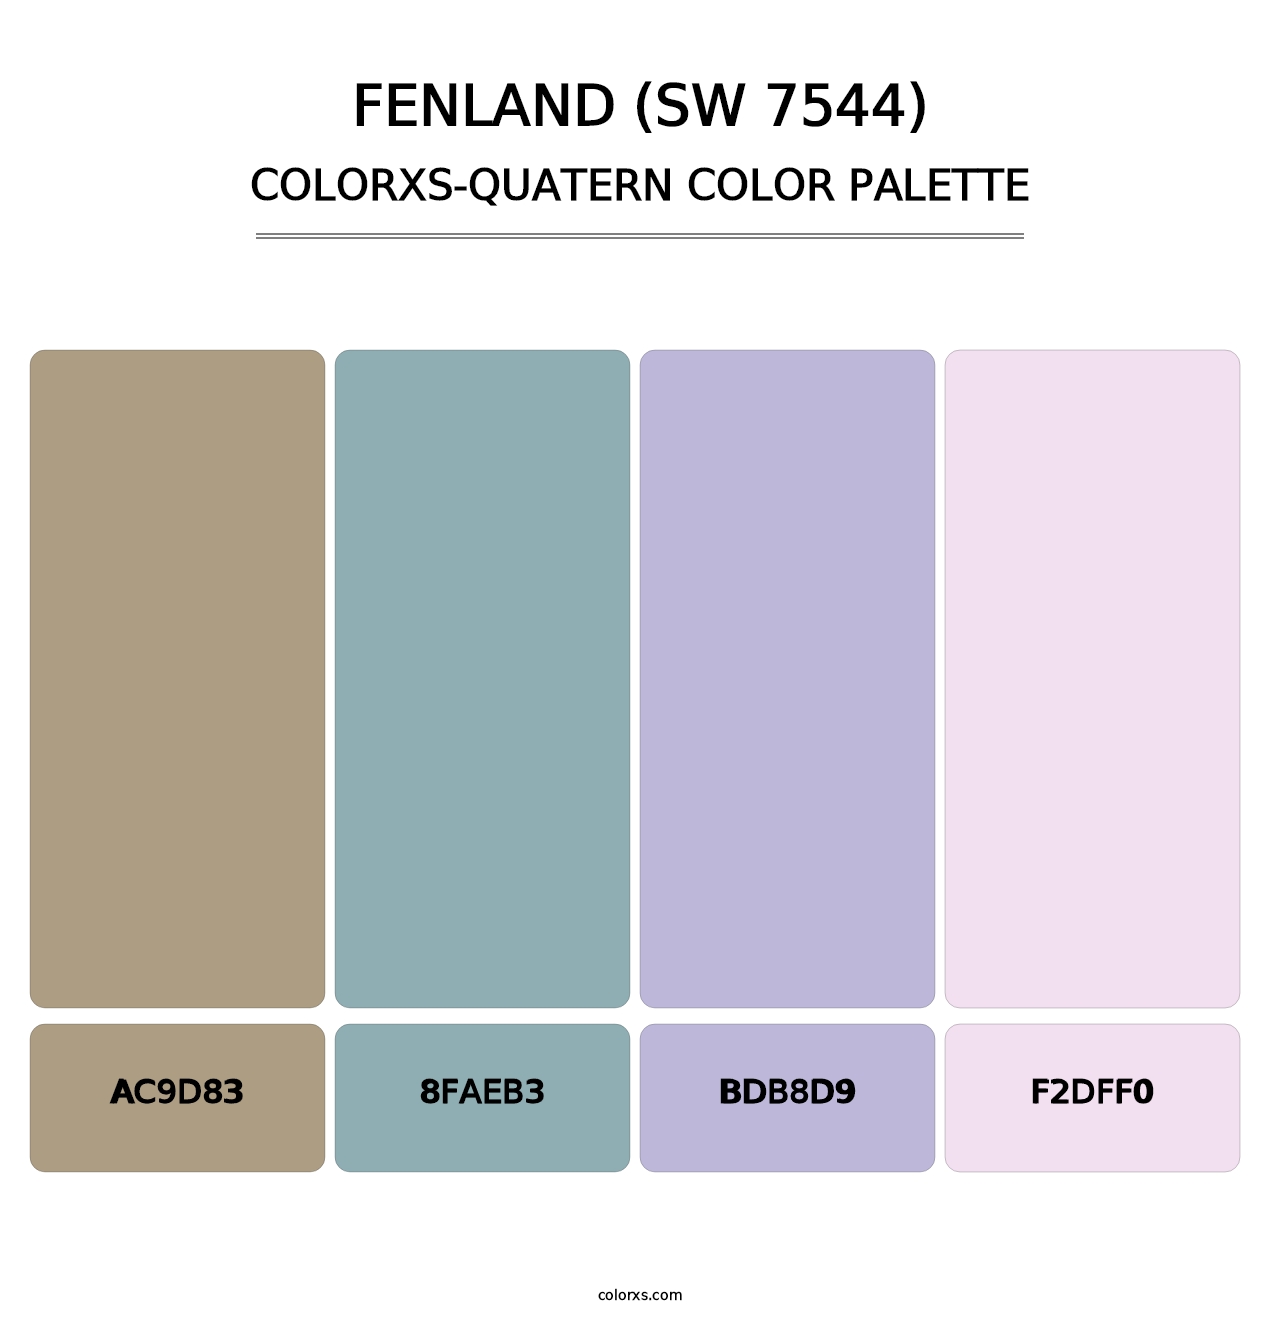 Fenland (SW 7544) - Colorxs Quatern Palette